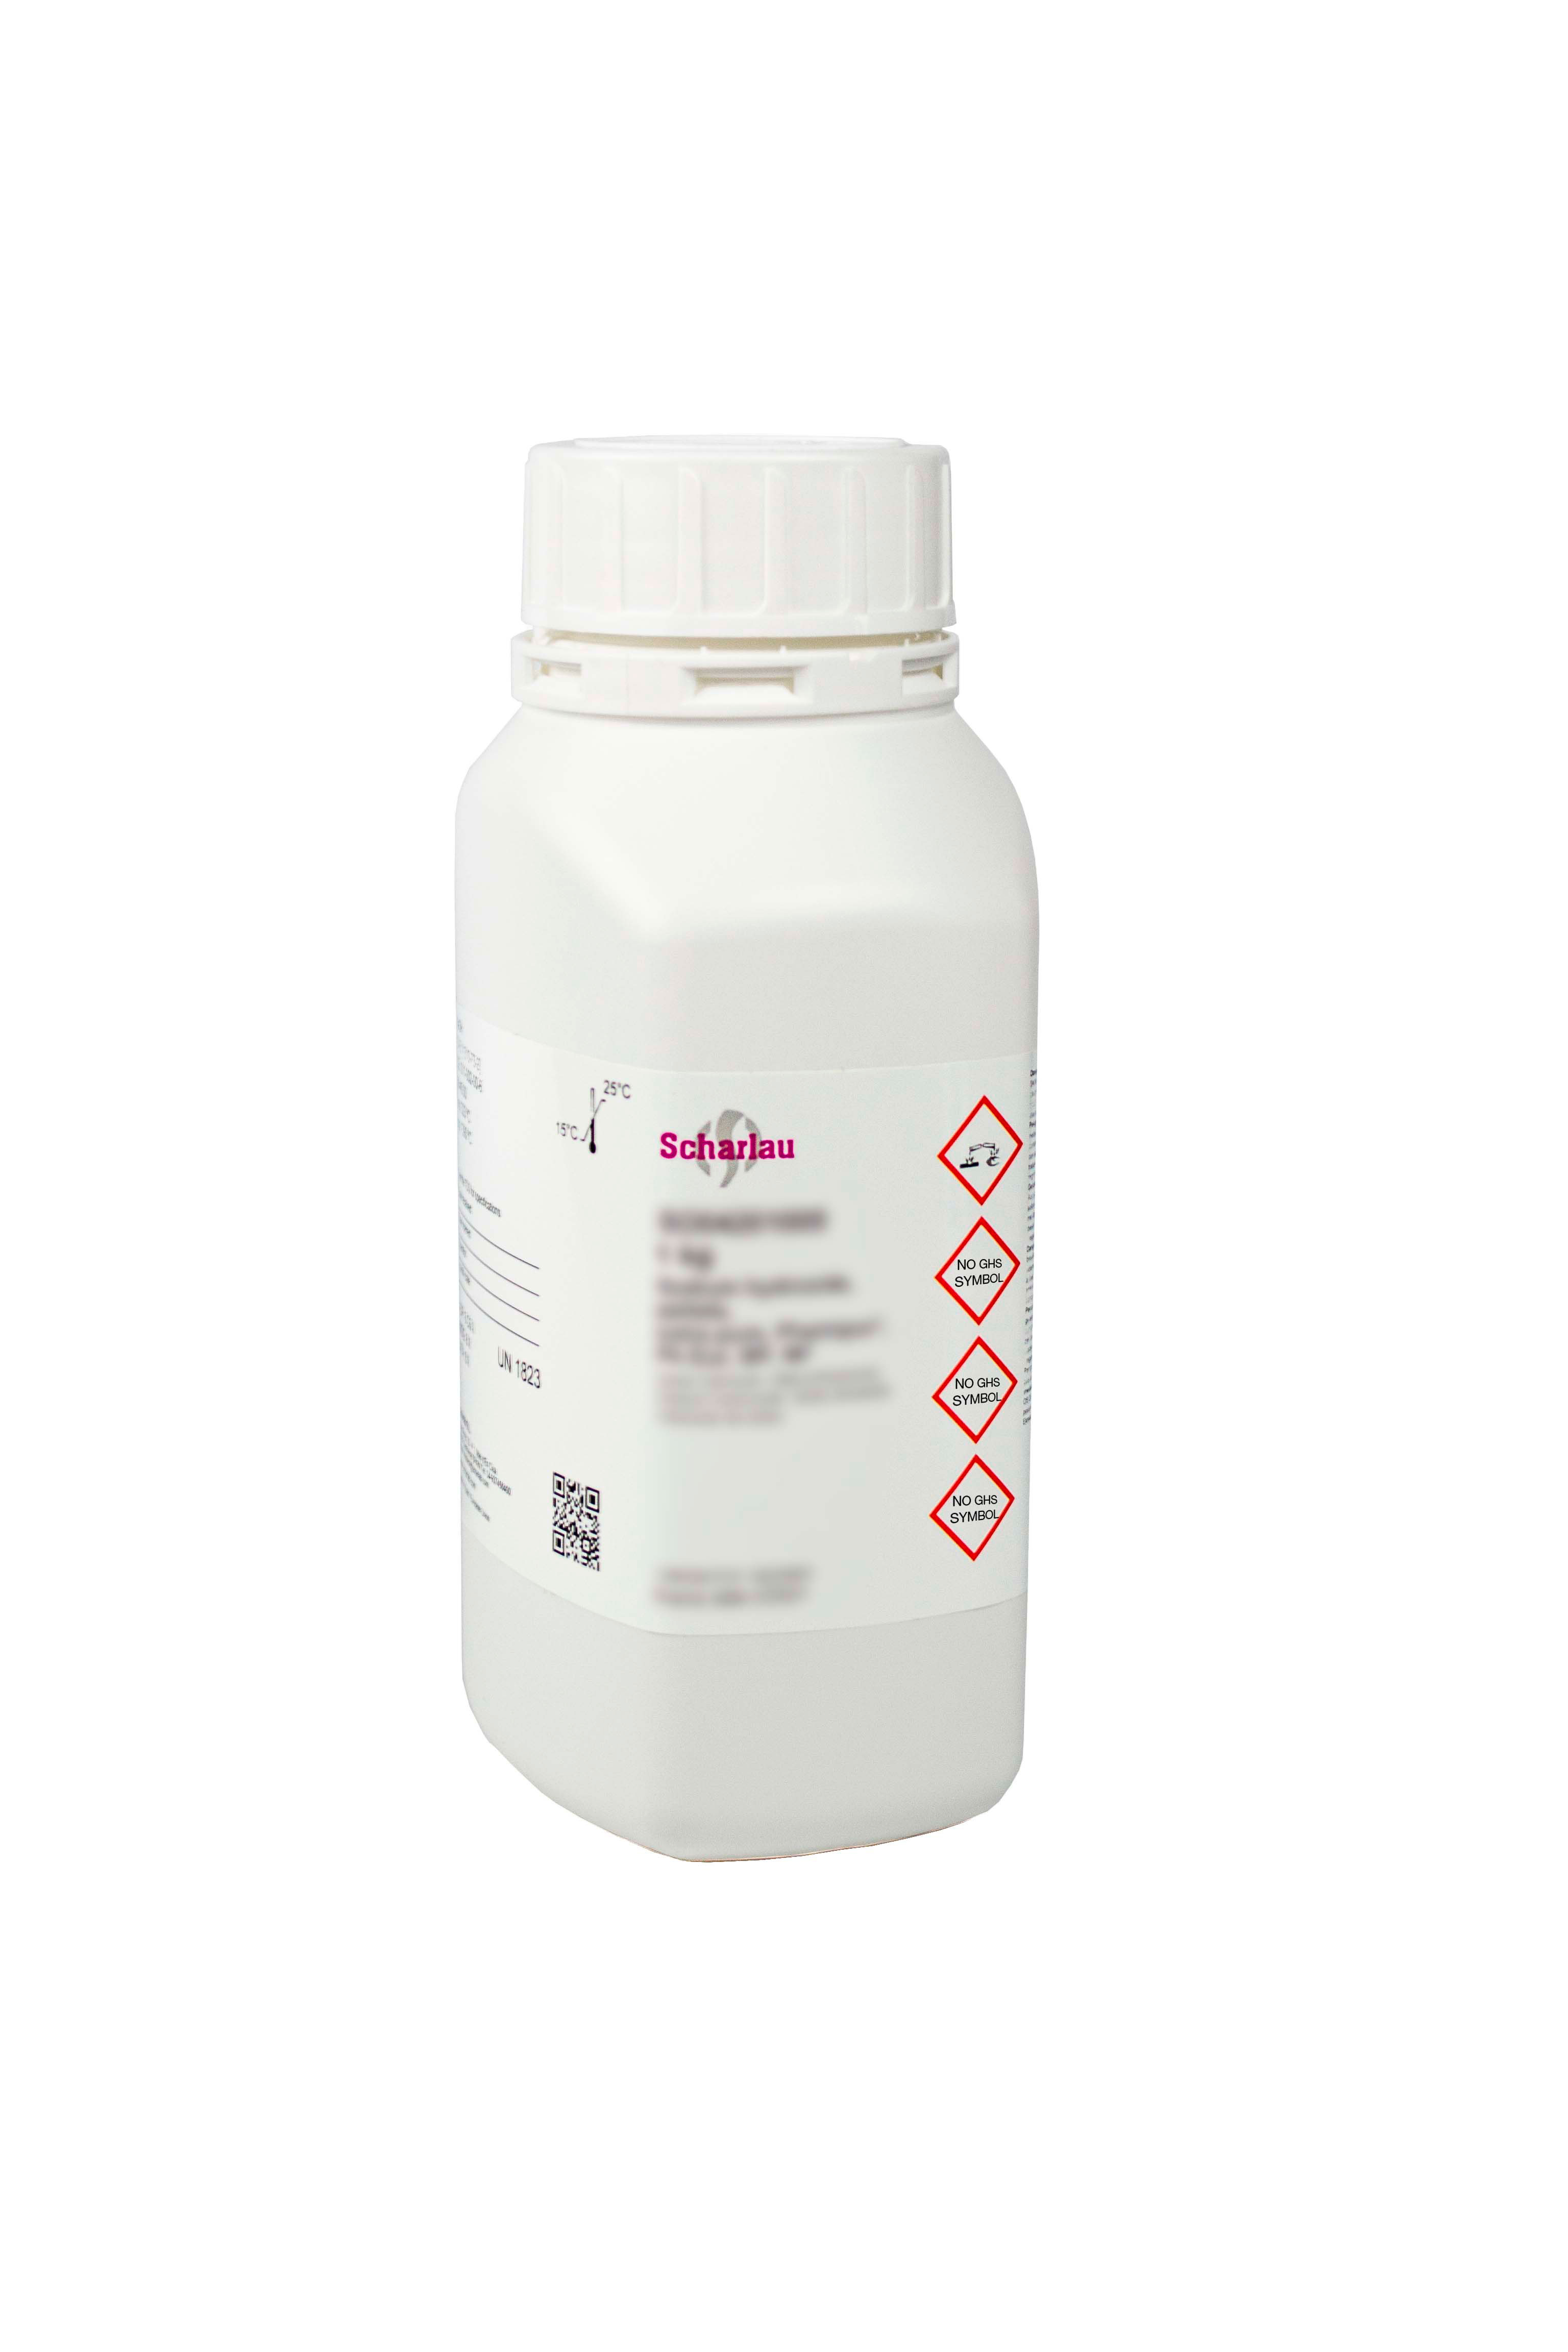 Hyamine® 1622 (Hyamine is a trademark of Rohm and HAAss Company), N-Benzyl-N,N-dimethyl-N-[4-(1,1,3,3-tetramethylbutyl)-phenoxyethoxyethyl]ammonium chloride, Benzethonium chloride